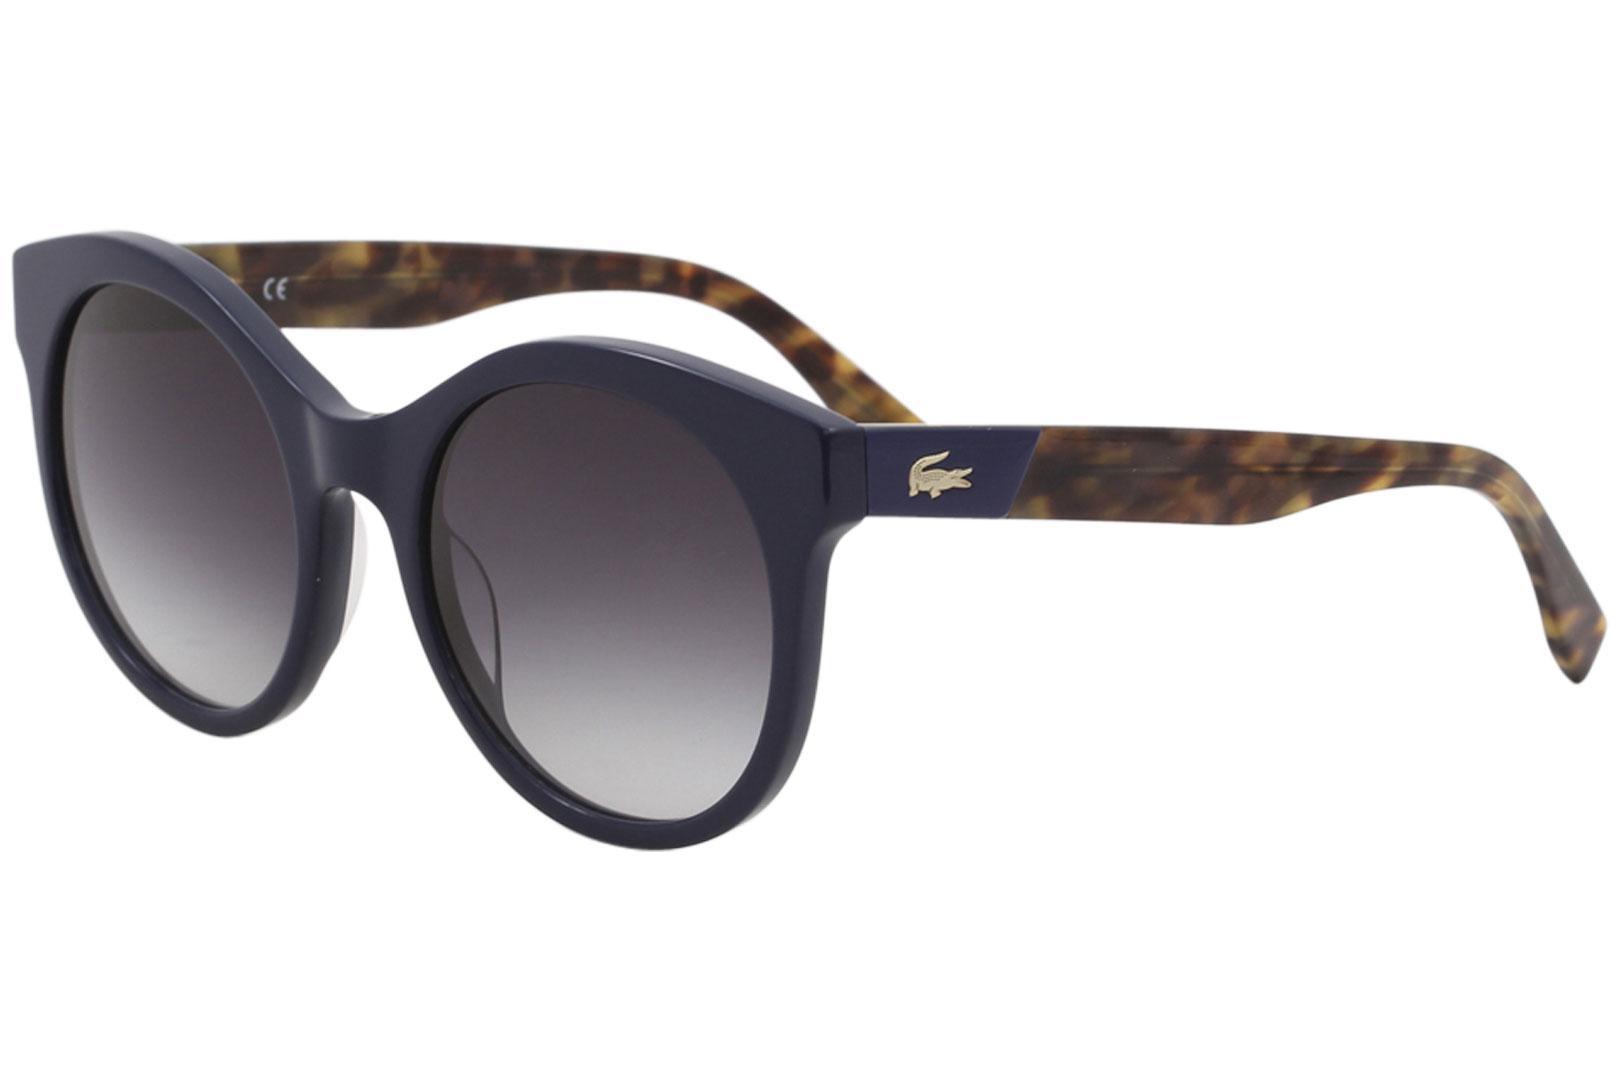 Lacoste Women's L851S L/851/S 424 Blue/Tortoise Fashion Round Sunglasses 53mm - Blue Tortoise/Grey Gradient   424 - Lens 53 Bridge 21 Temple 140mm